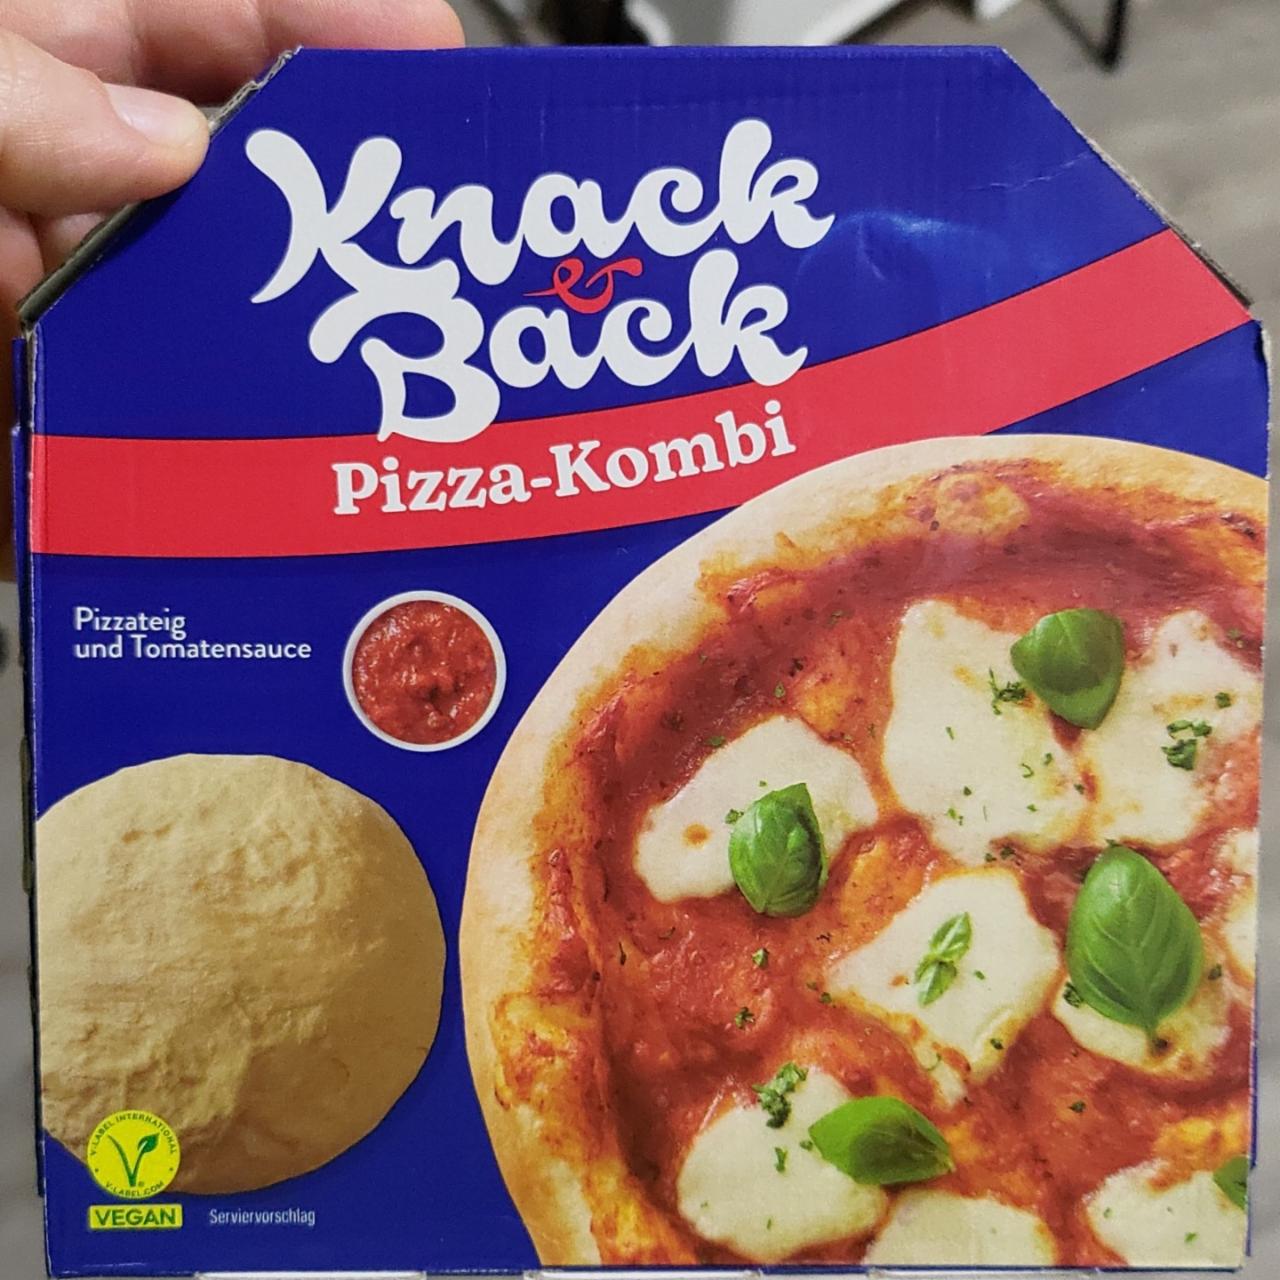 Fotografie - Pizza-Kombi Knack & Back